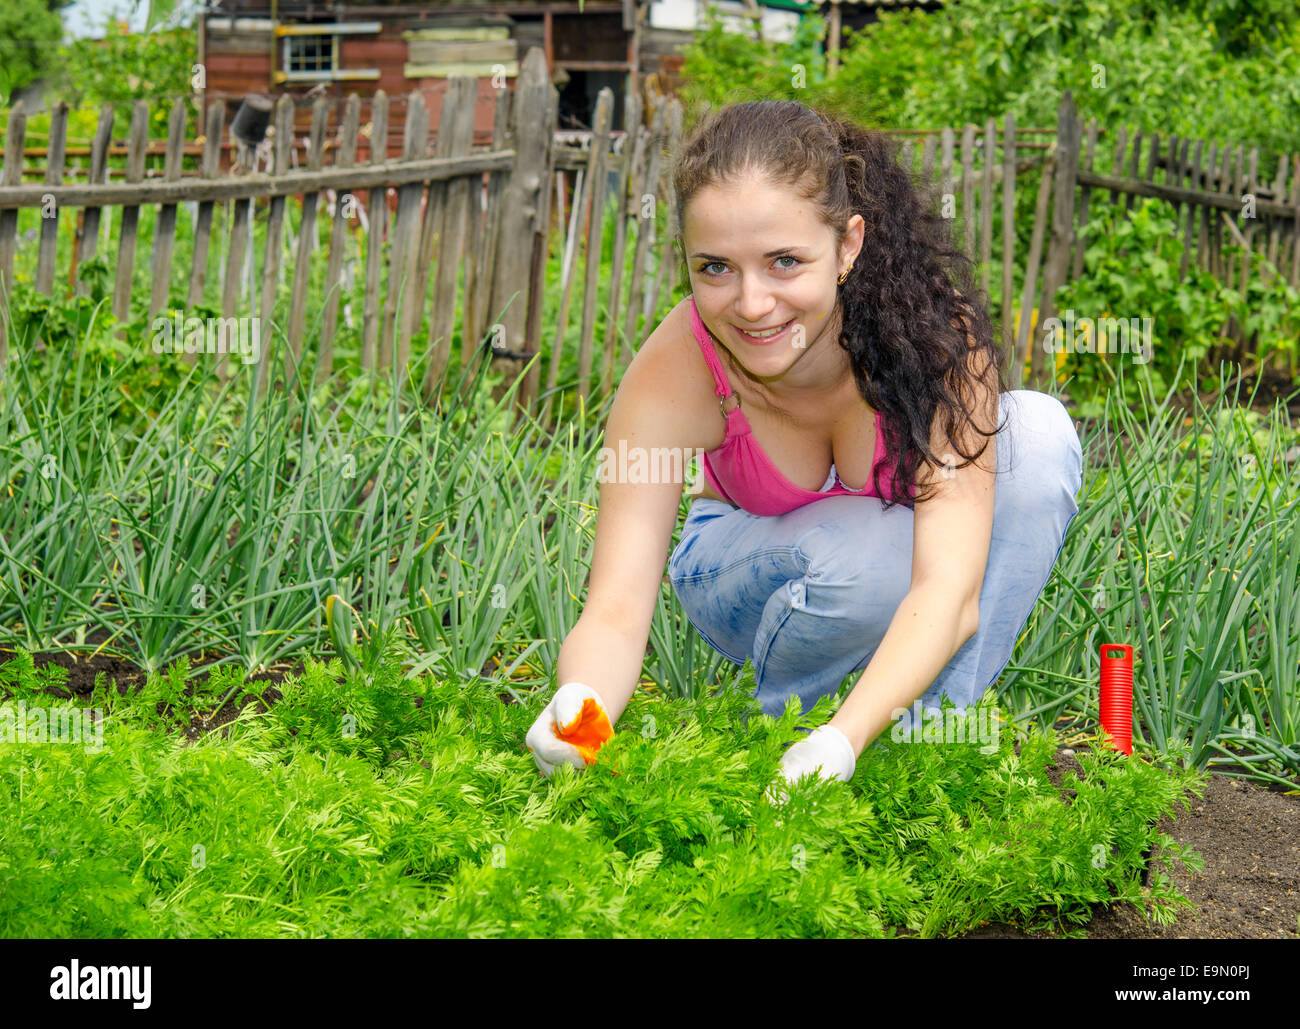 gardening Stock Photo